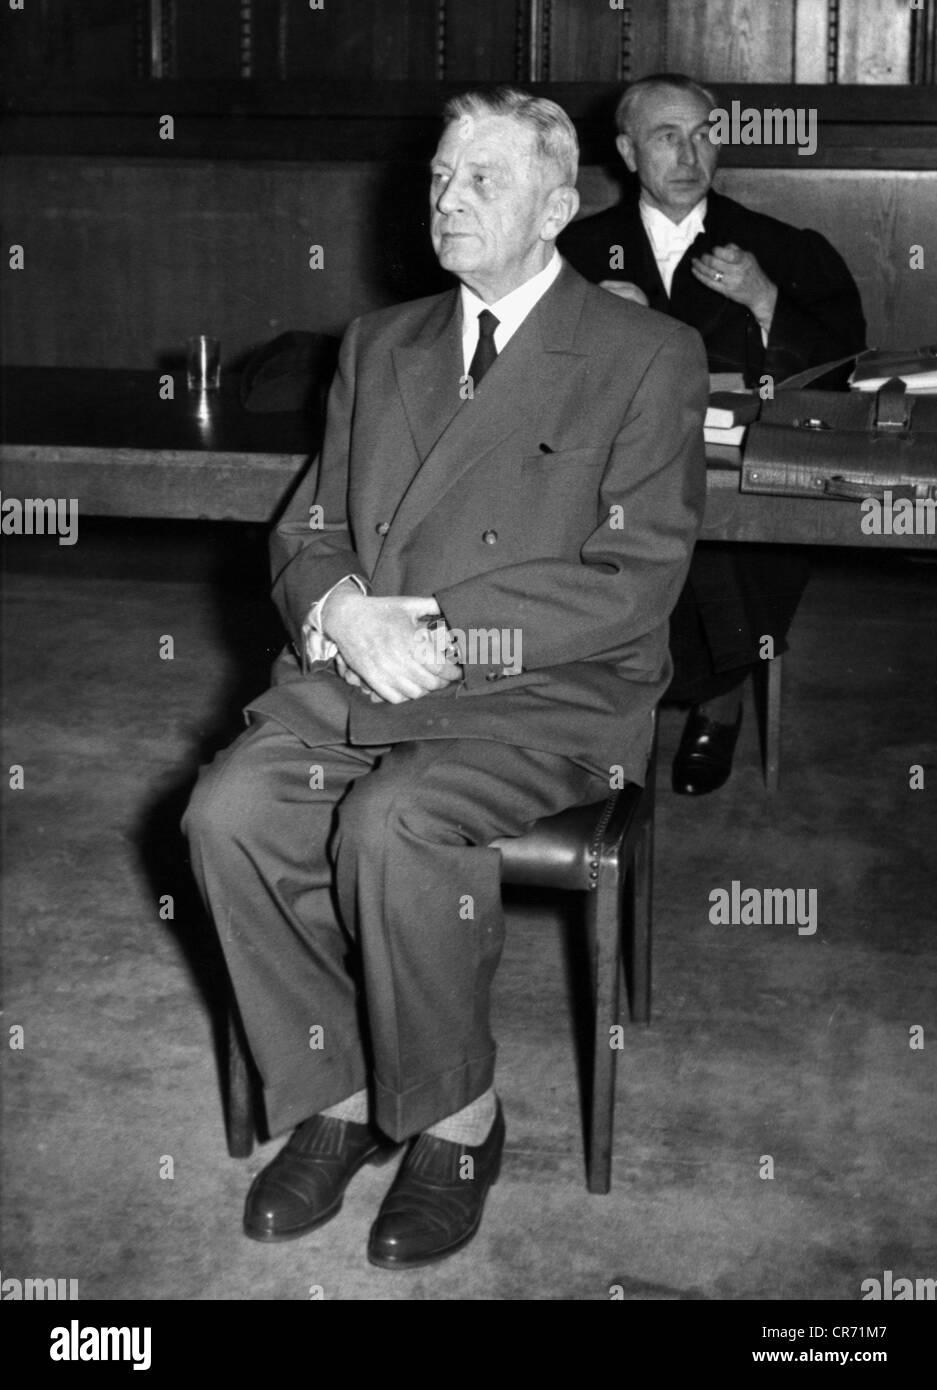 Bach-Zelewski, Erich von dem, 1.3.1899 - 8.3.1972, German politician (NSDAP), trial in Nuremberg, 16.1.1961, his solicitor Dr  Wolpert behind him, , Stock Photo